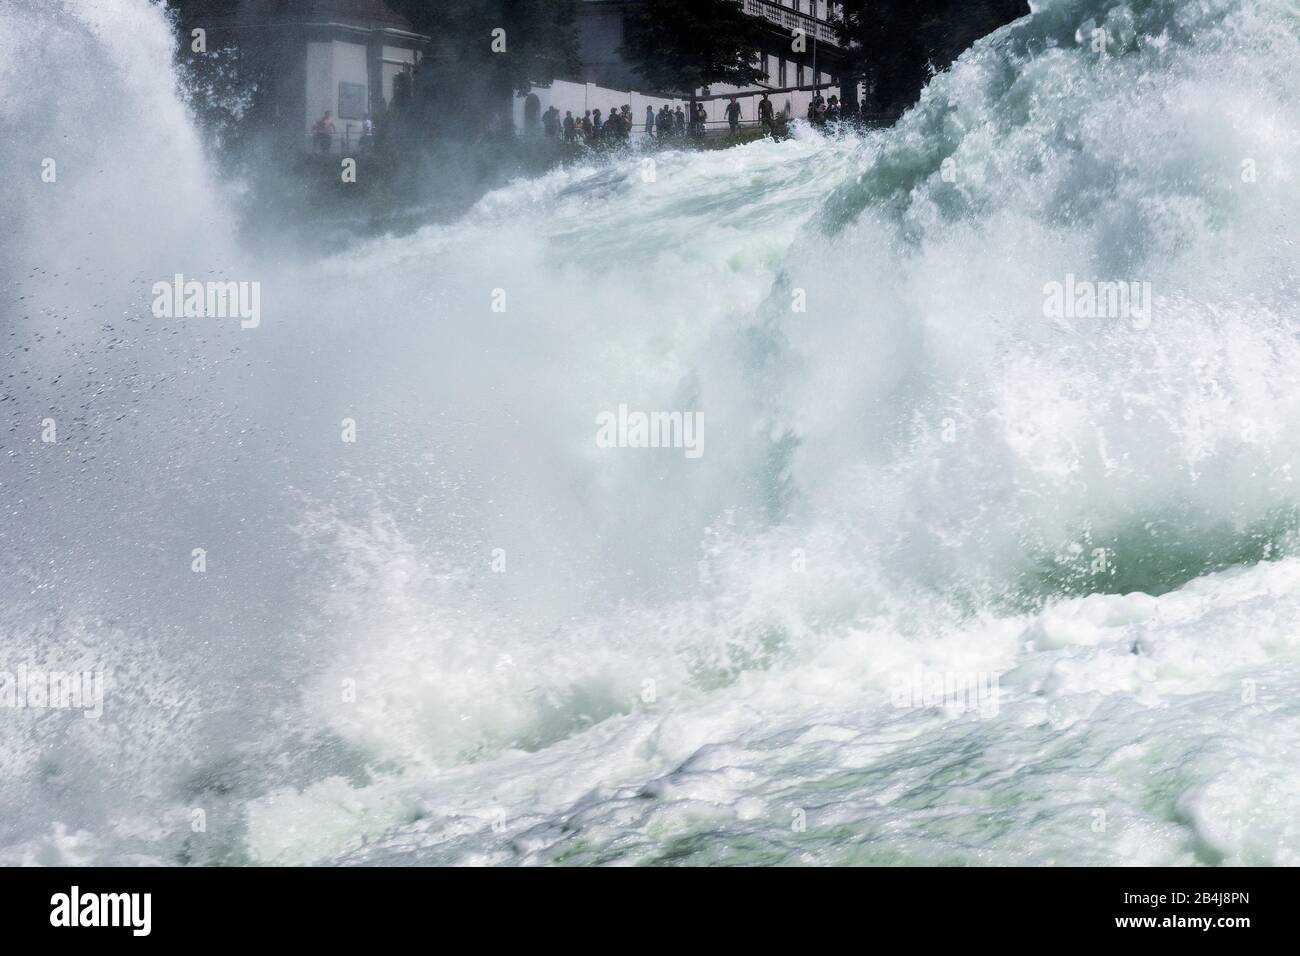 Rheinfall bei Schaffhausen, Blick zum anderen Ufer, stürzendes Wasser Stock Photo